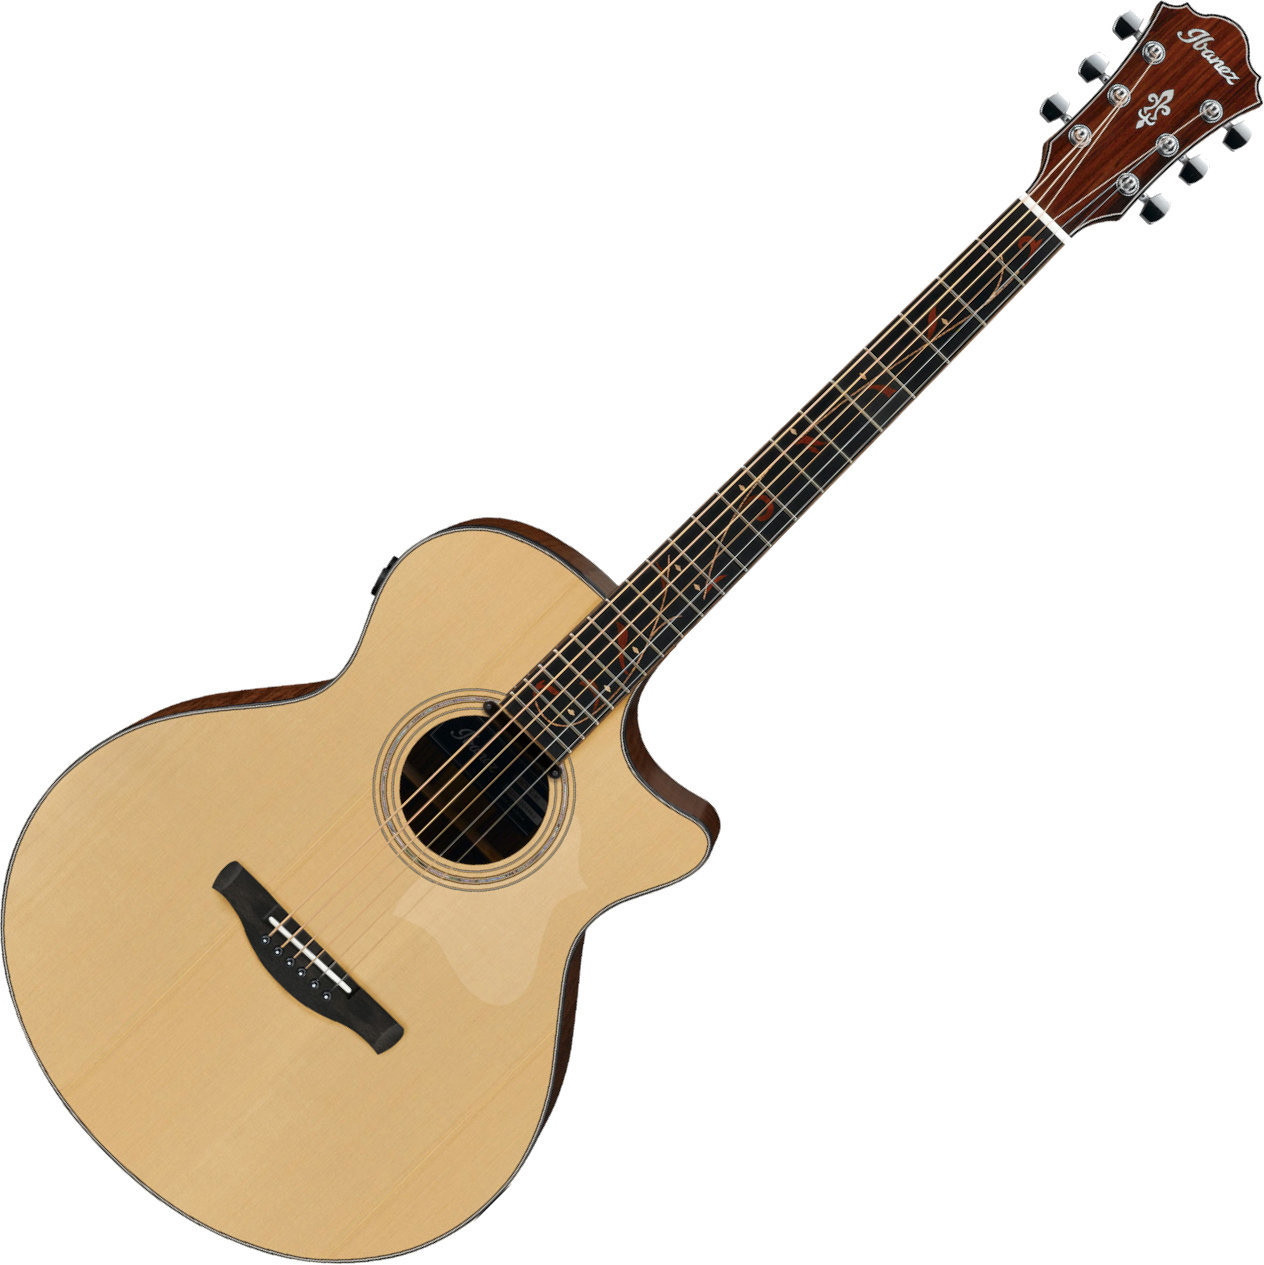 Ηλεκτροακουστική Κιθάρα Jumbo Ibanez AE275BT-LGS Natural